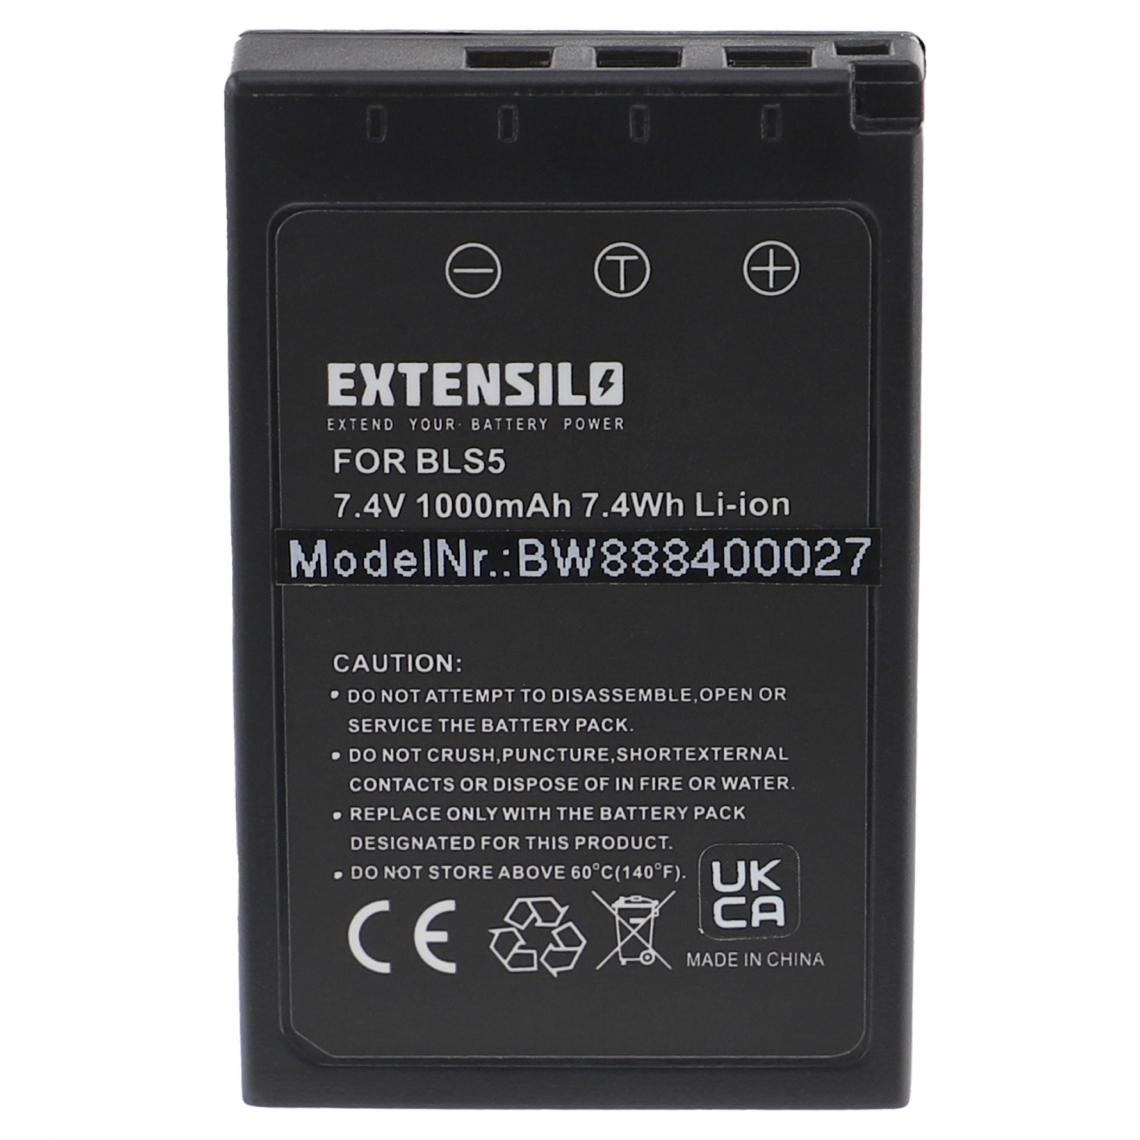 Vhbw - EXTENSILO Batterie compatible avec Olympus OM-D E-M5 Mark III appareil photo, reflex numérique (1000mAh, 7,4V, Li-ion) avec puce d'information - Batterie Photo & Video